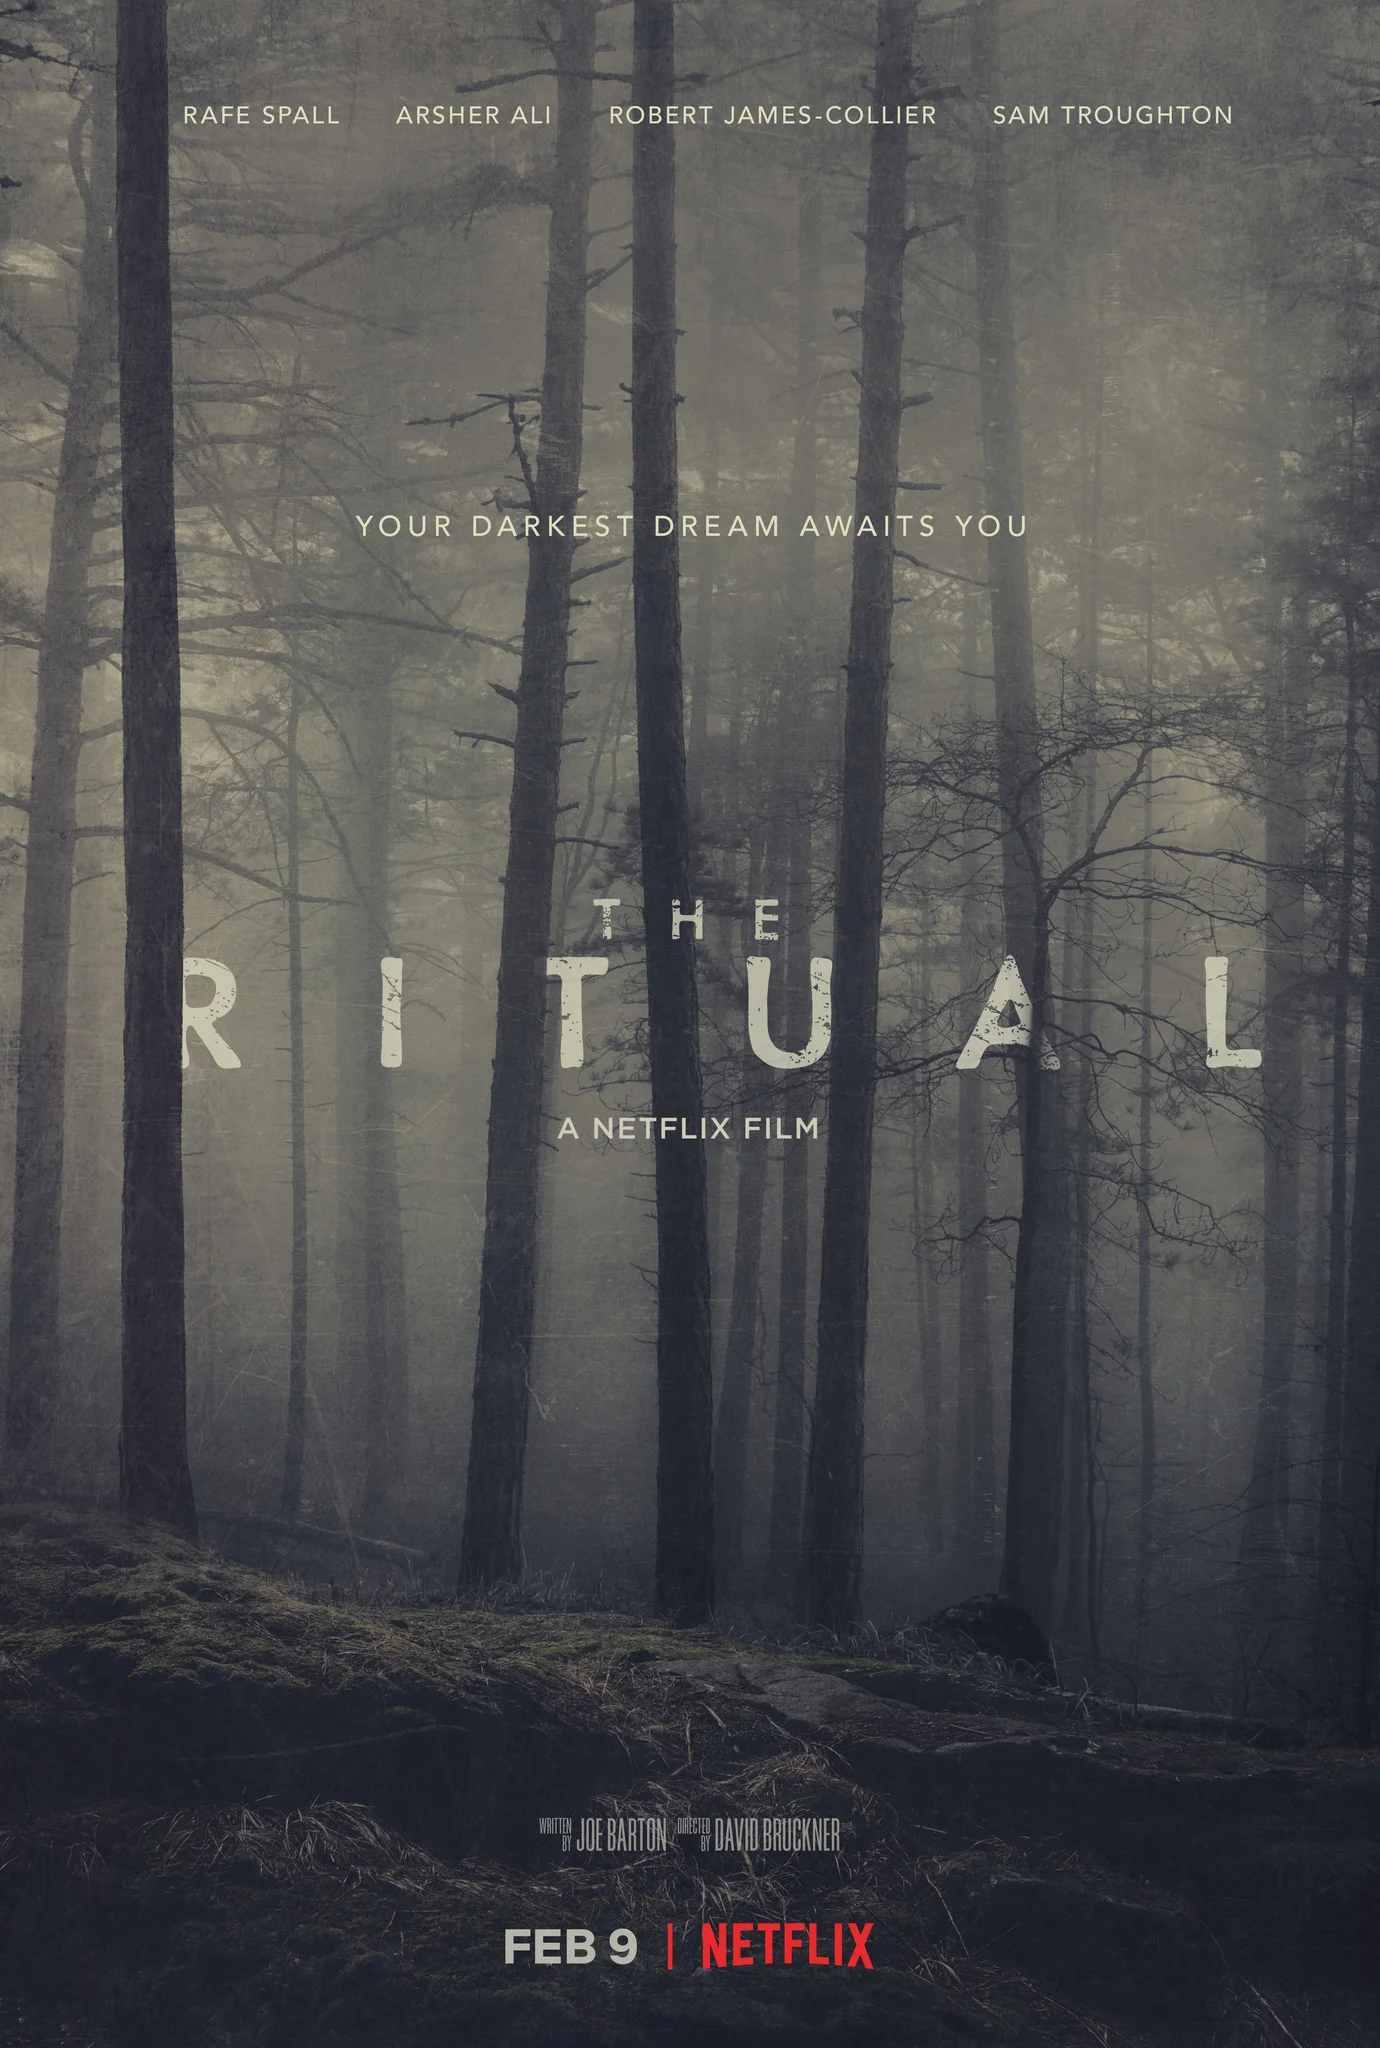 ดูหนังออนไลน์ฟรี The Ritual (2017) สัมผัสอาฆาต วิญญาณสยอง ดูไม่ได้ให้กดที่นี่ ตัวเล่นหลัก